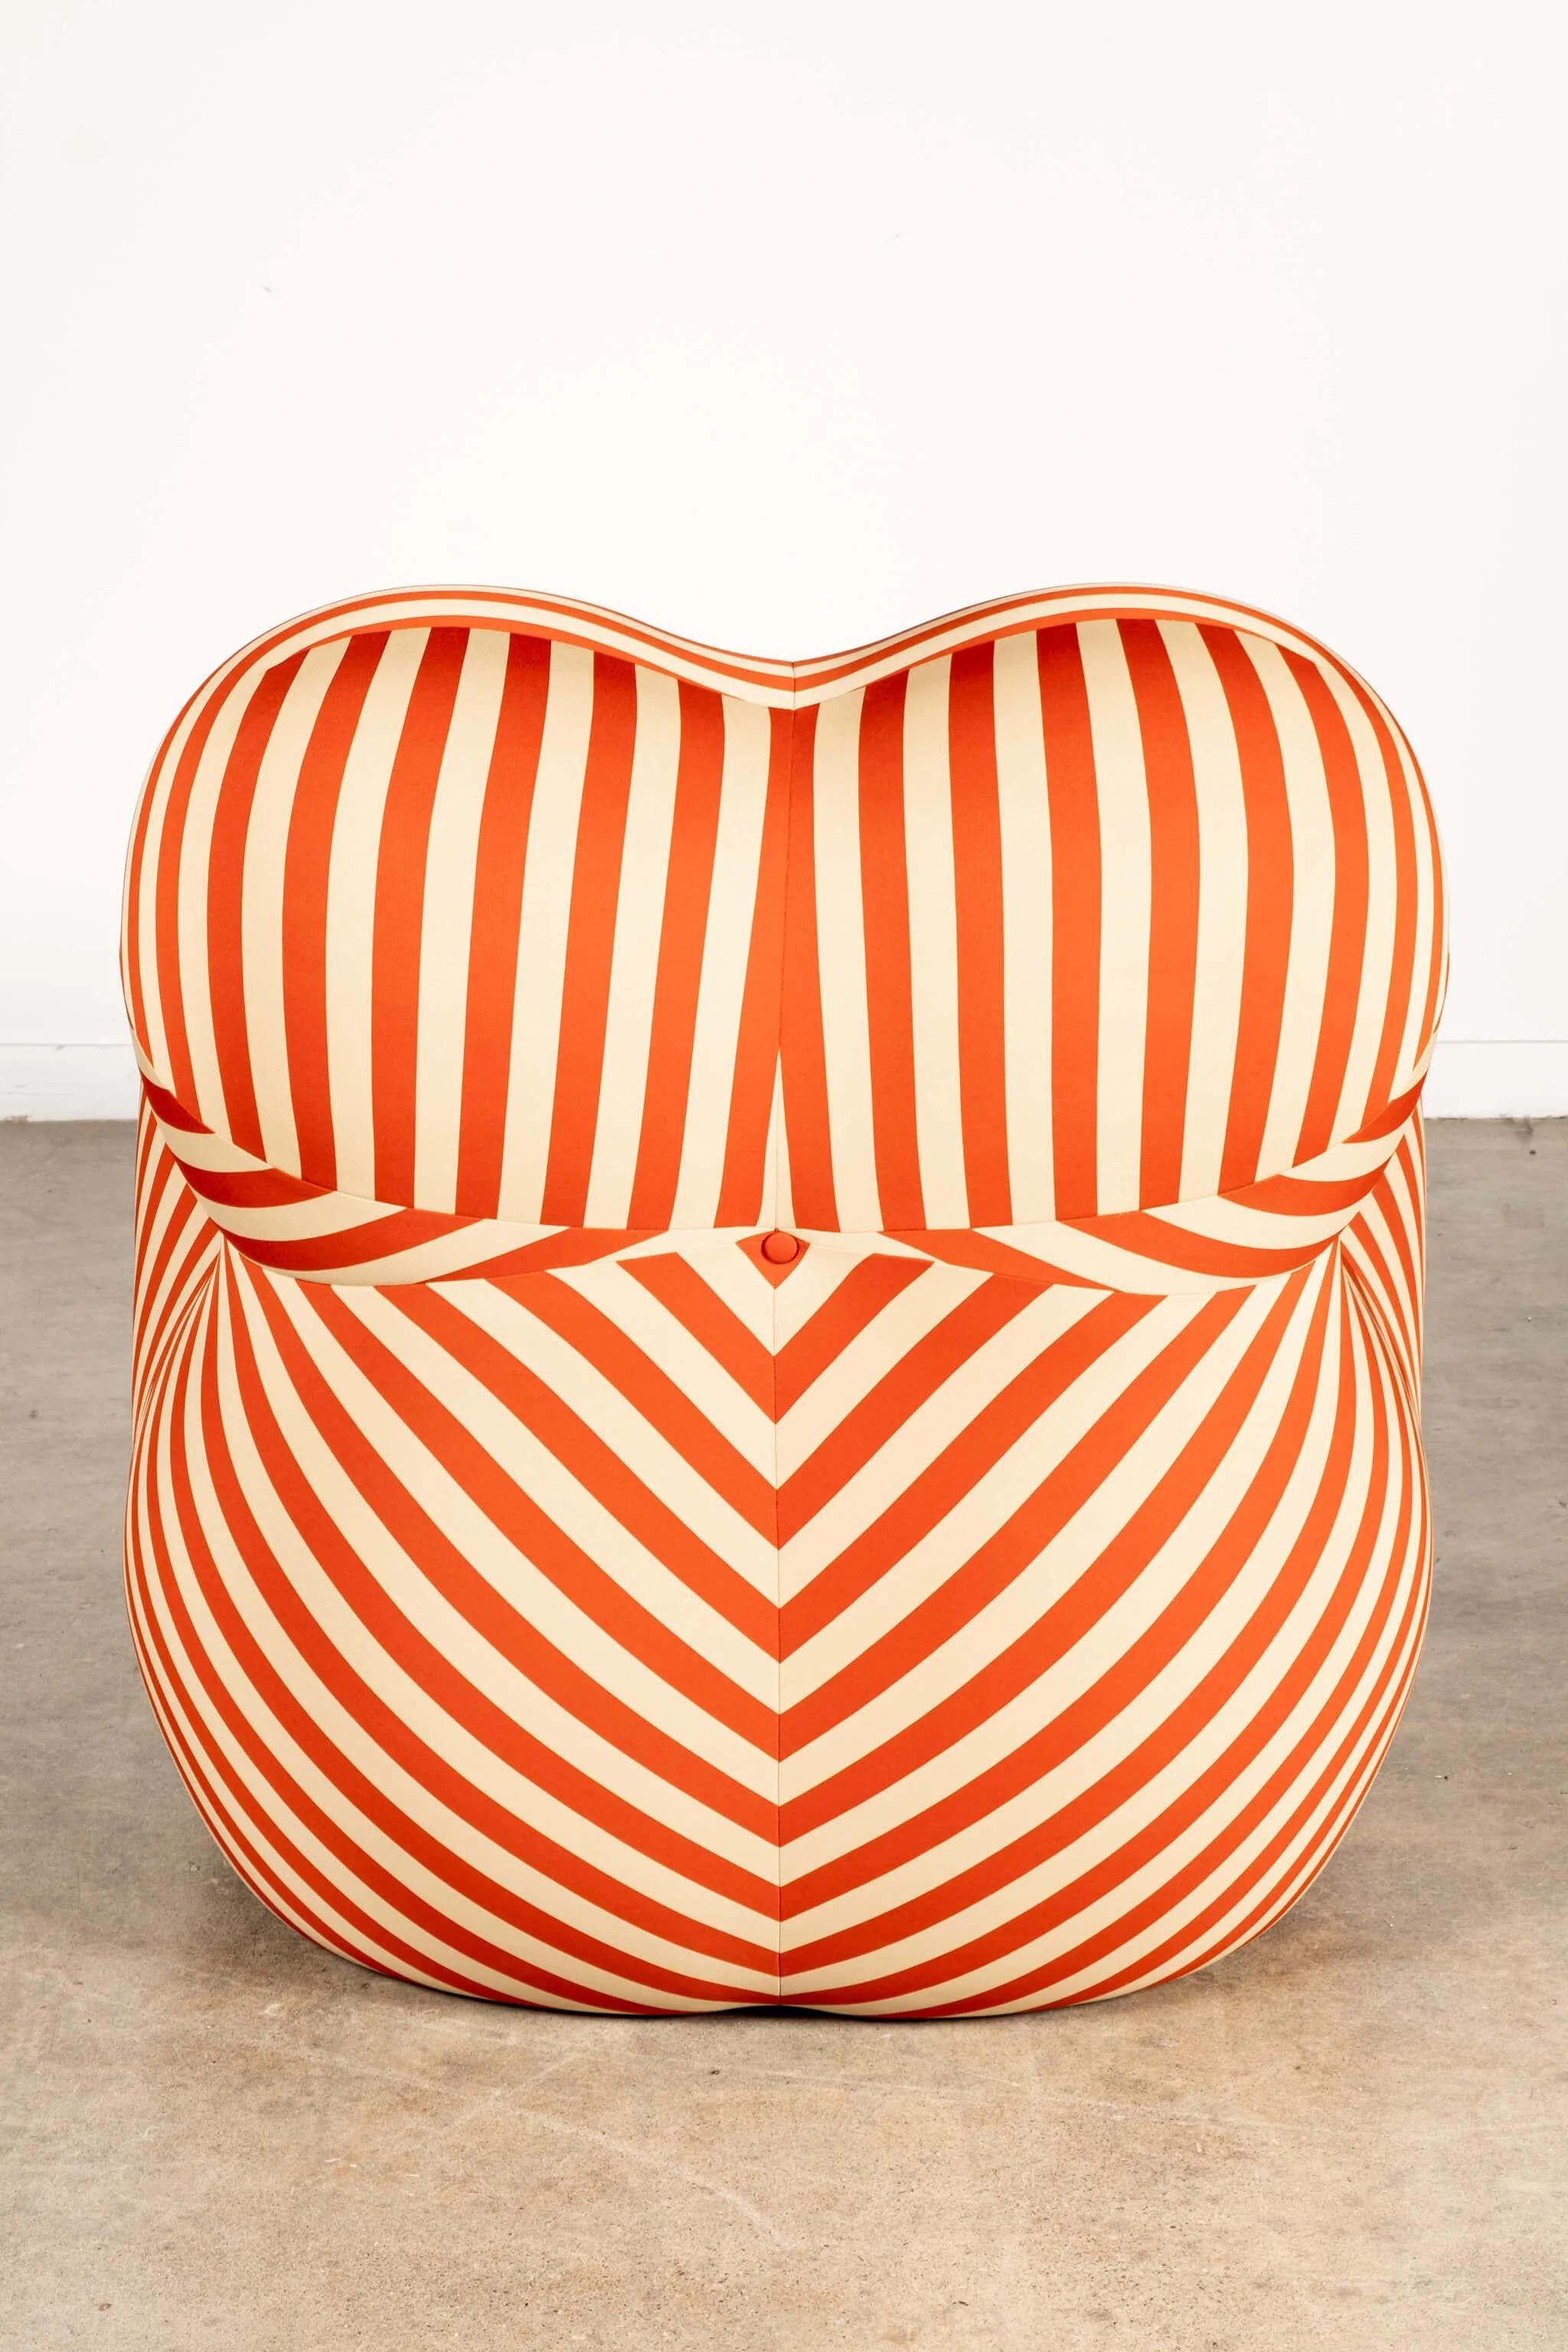 B&B Italia 'La Mamma' Up 5/6 Lounge Chair & Ottoman, Red Stripe by Gaetano Pesce For Sale 3